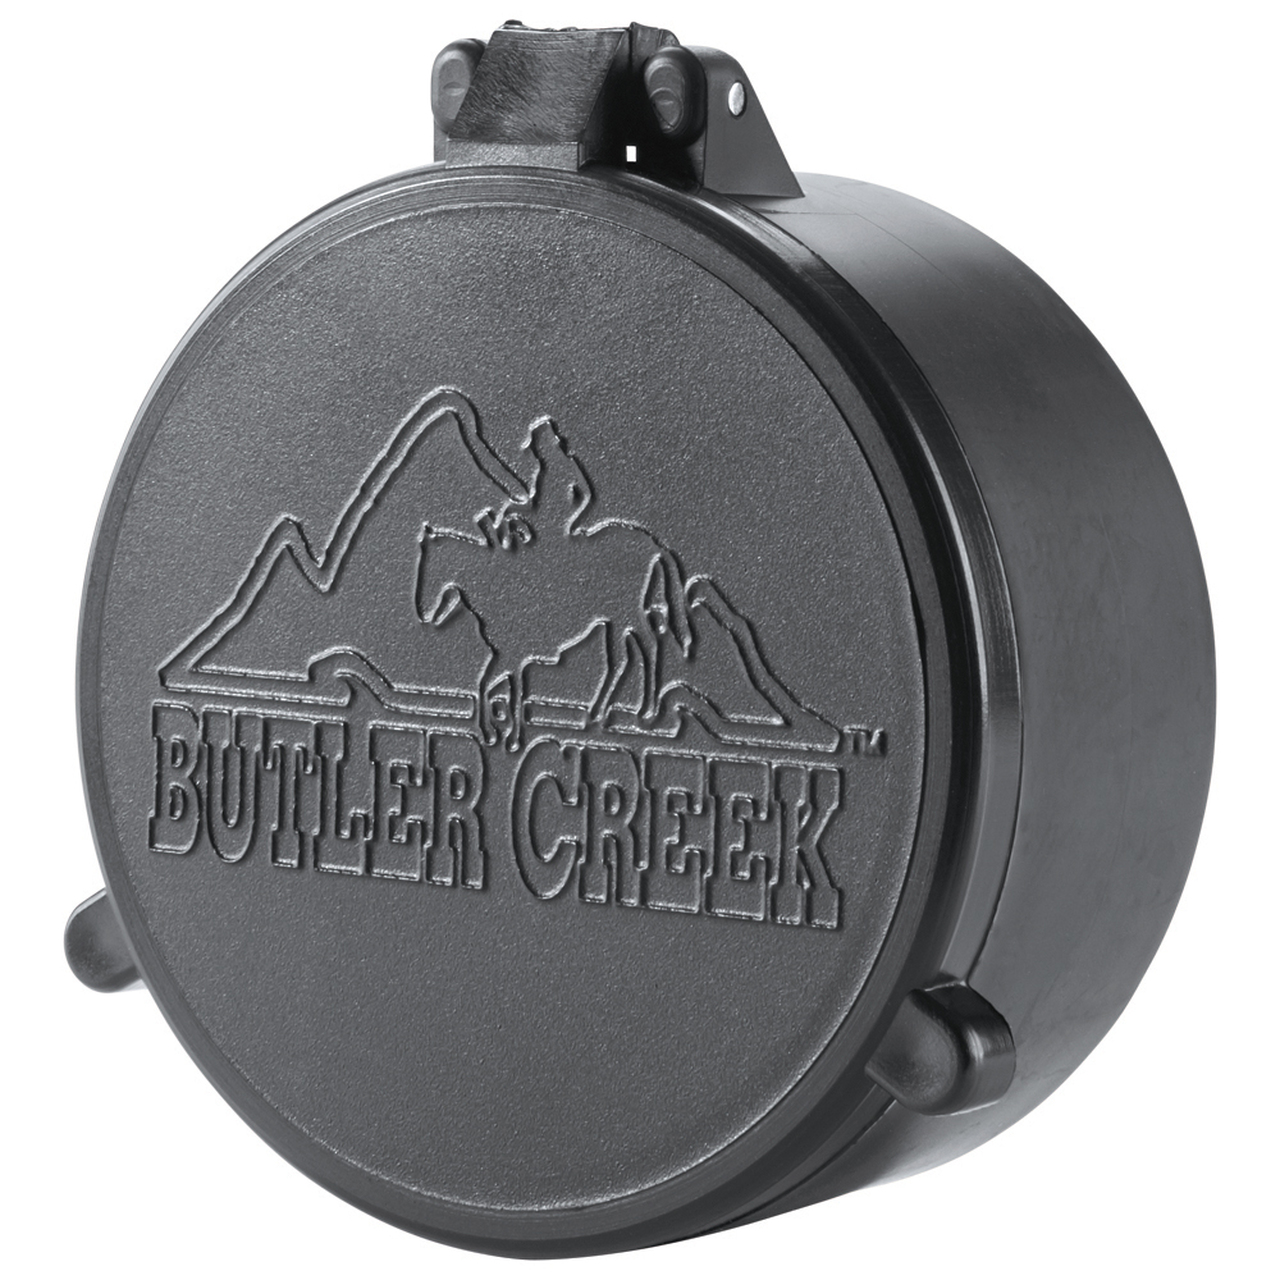 Butler Creek 33031 Multi-Flex Flip-Open Scope Cover Objective Lens 49.80-50.70mm Slip On Polymer Black